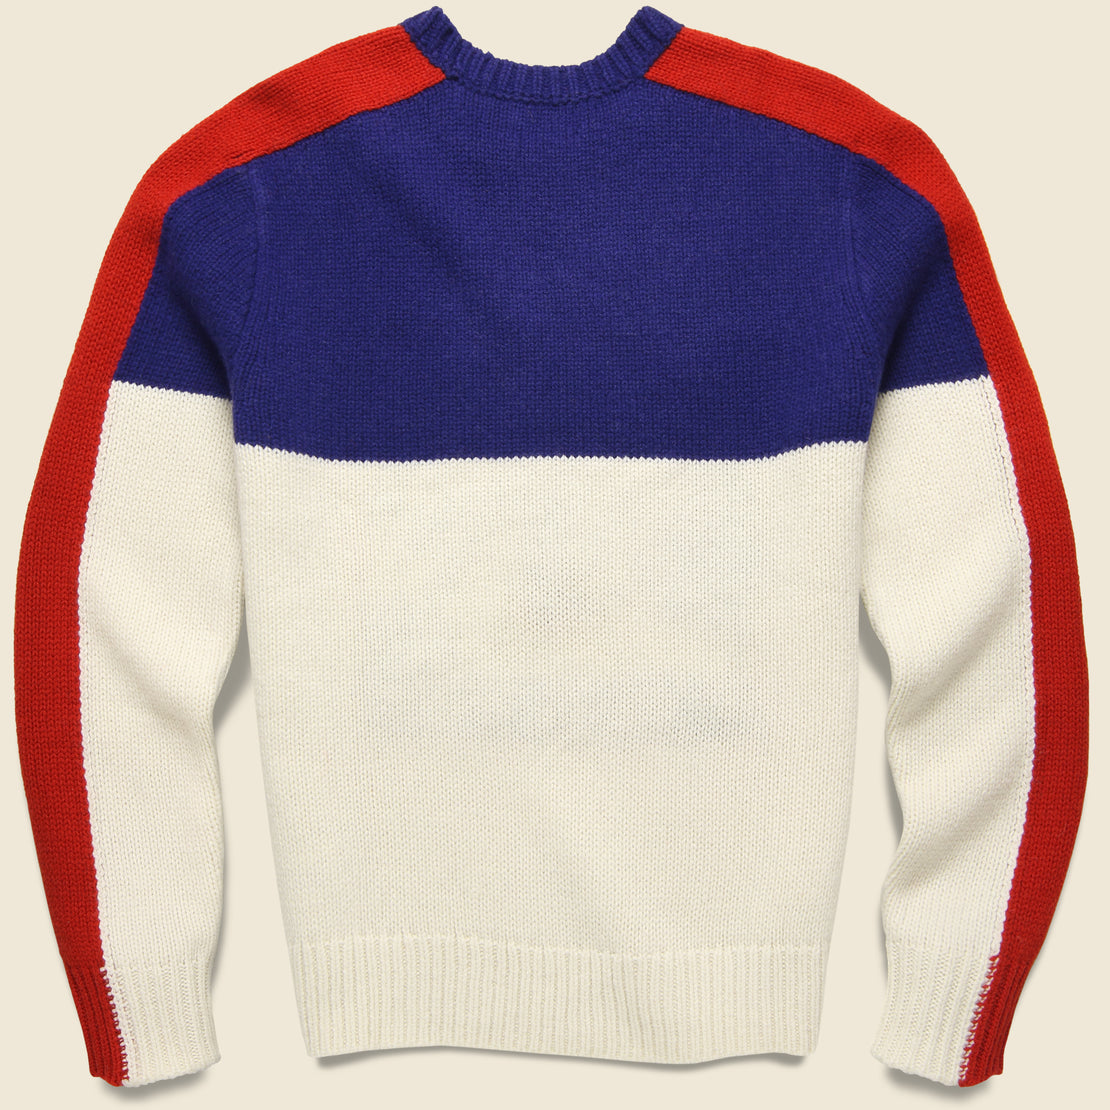 Polo Ski Crewneck Sweater - Cream Multi - Polo Ralph Lauren - STAG Provisions - Tops - Sweater